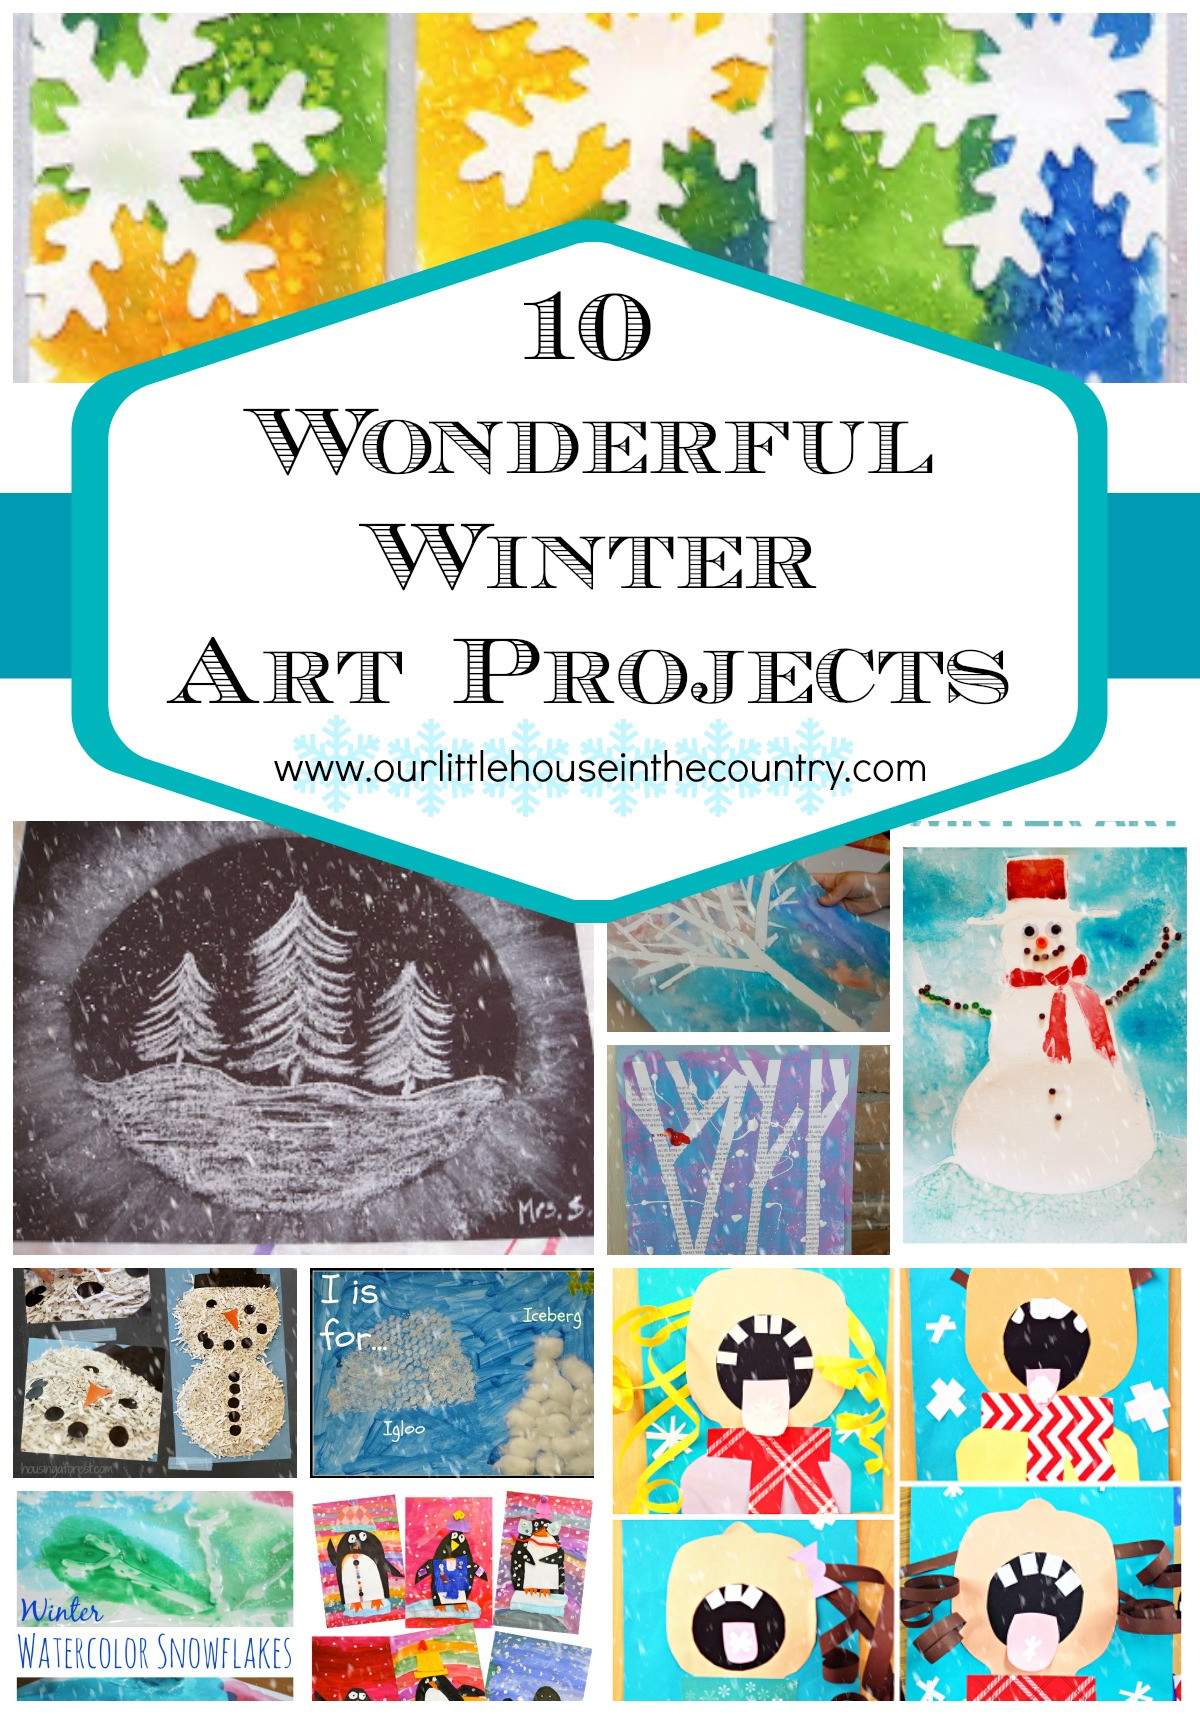 Fun Art Projects For Preschoolers
 10 Wonderful Winter Art Projects